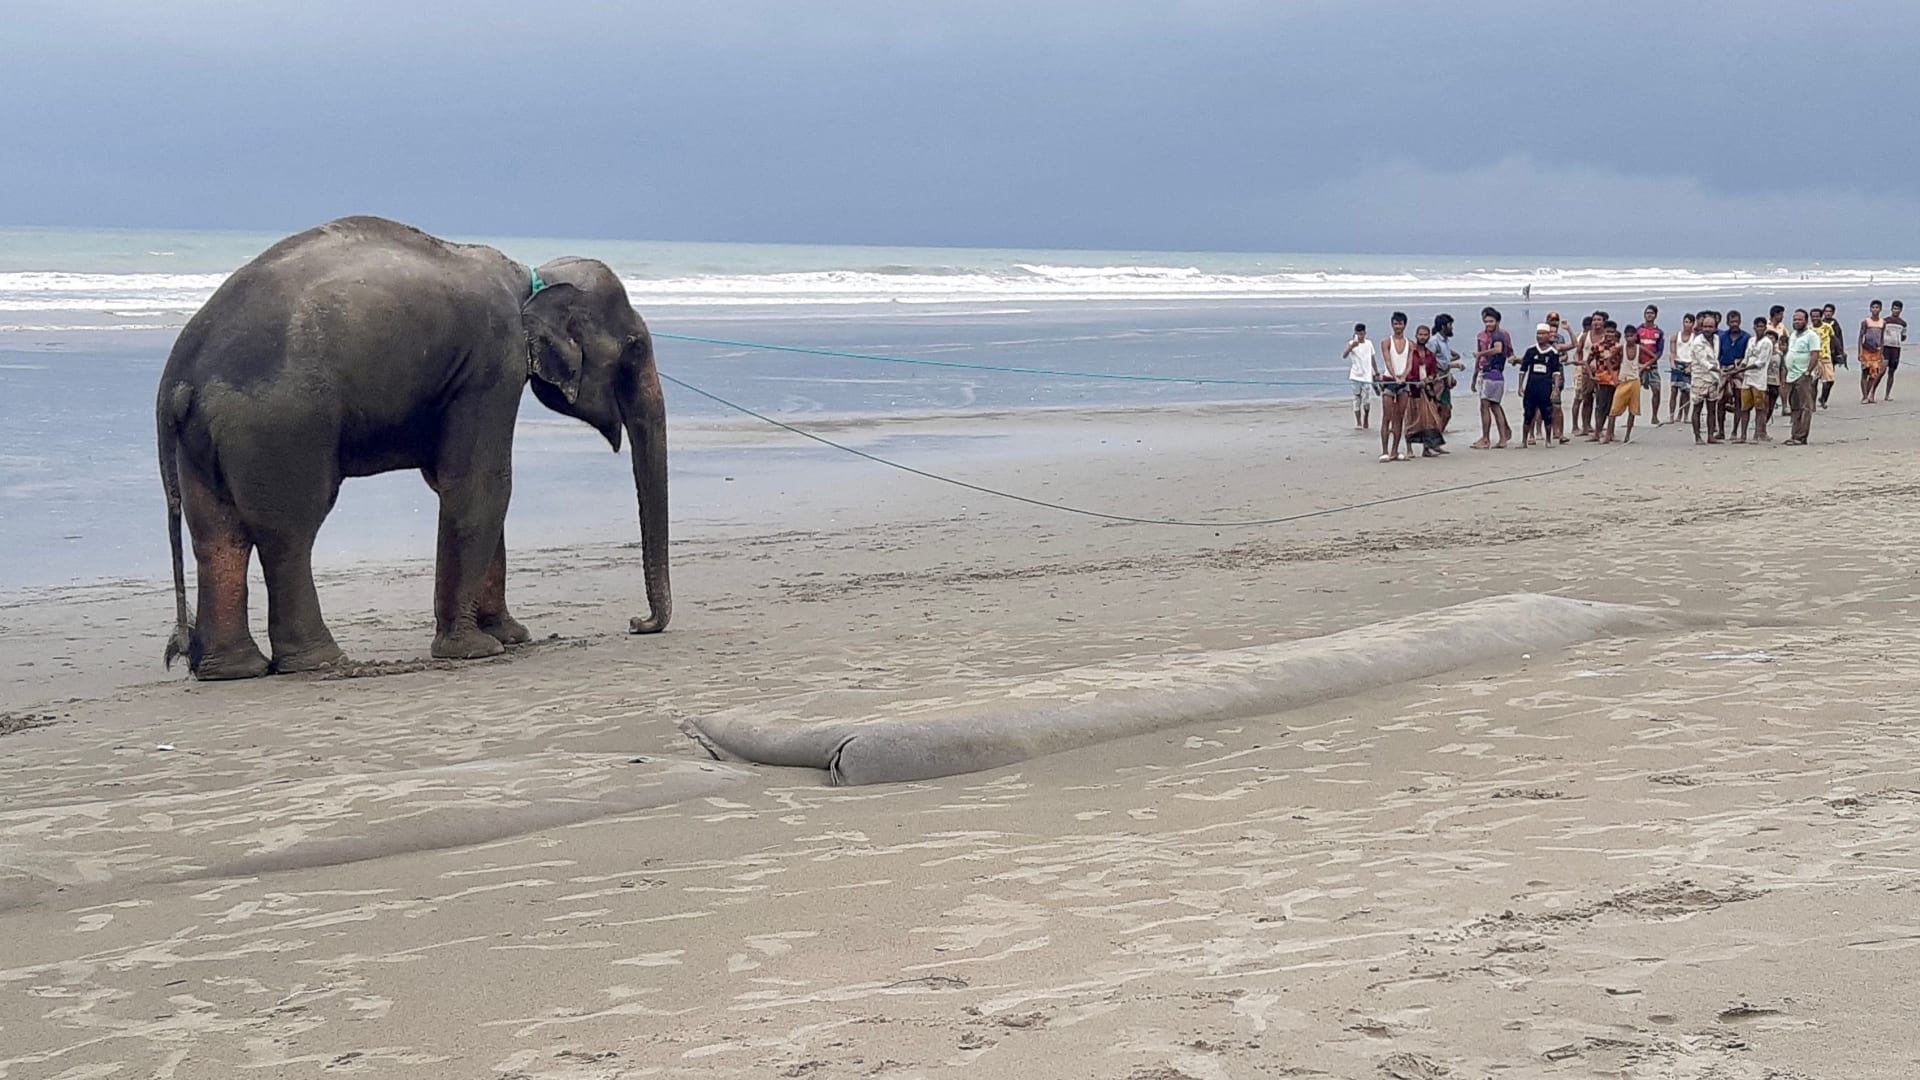 عبرا الحدود بين ميانمار وبنغلاديش.. شاهد إنقاذ اثنين من الفيلة بعد رحلة مليئة بالعذاب